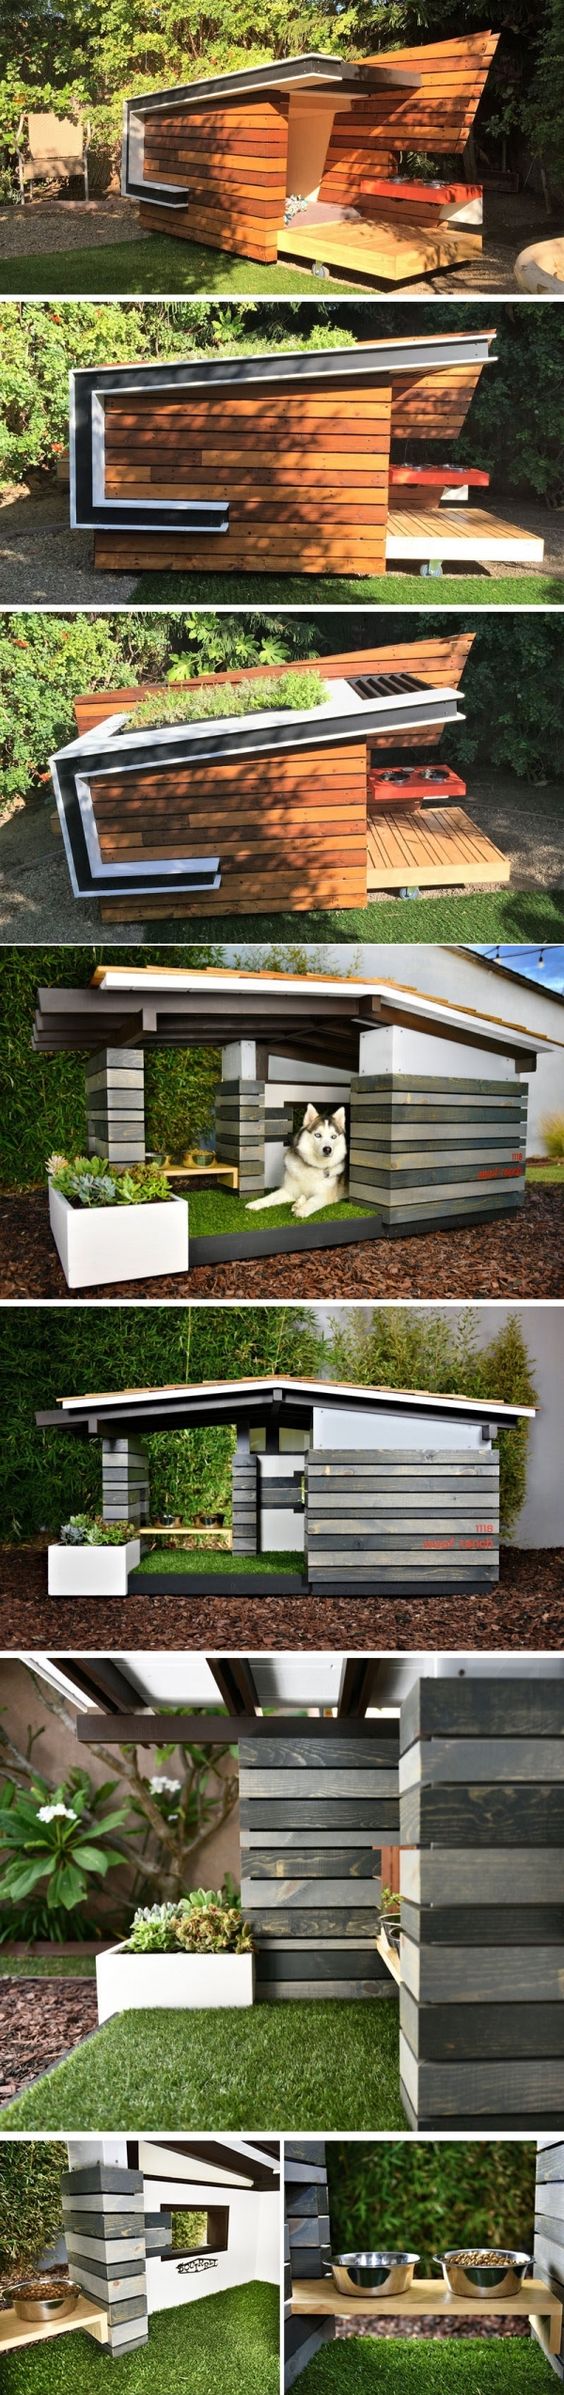 ภาพ : http://www.contemporist.com/modern-dog-houses-are-adorably-stylish